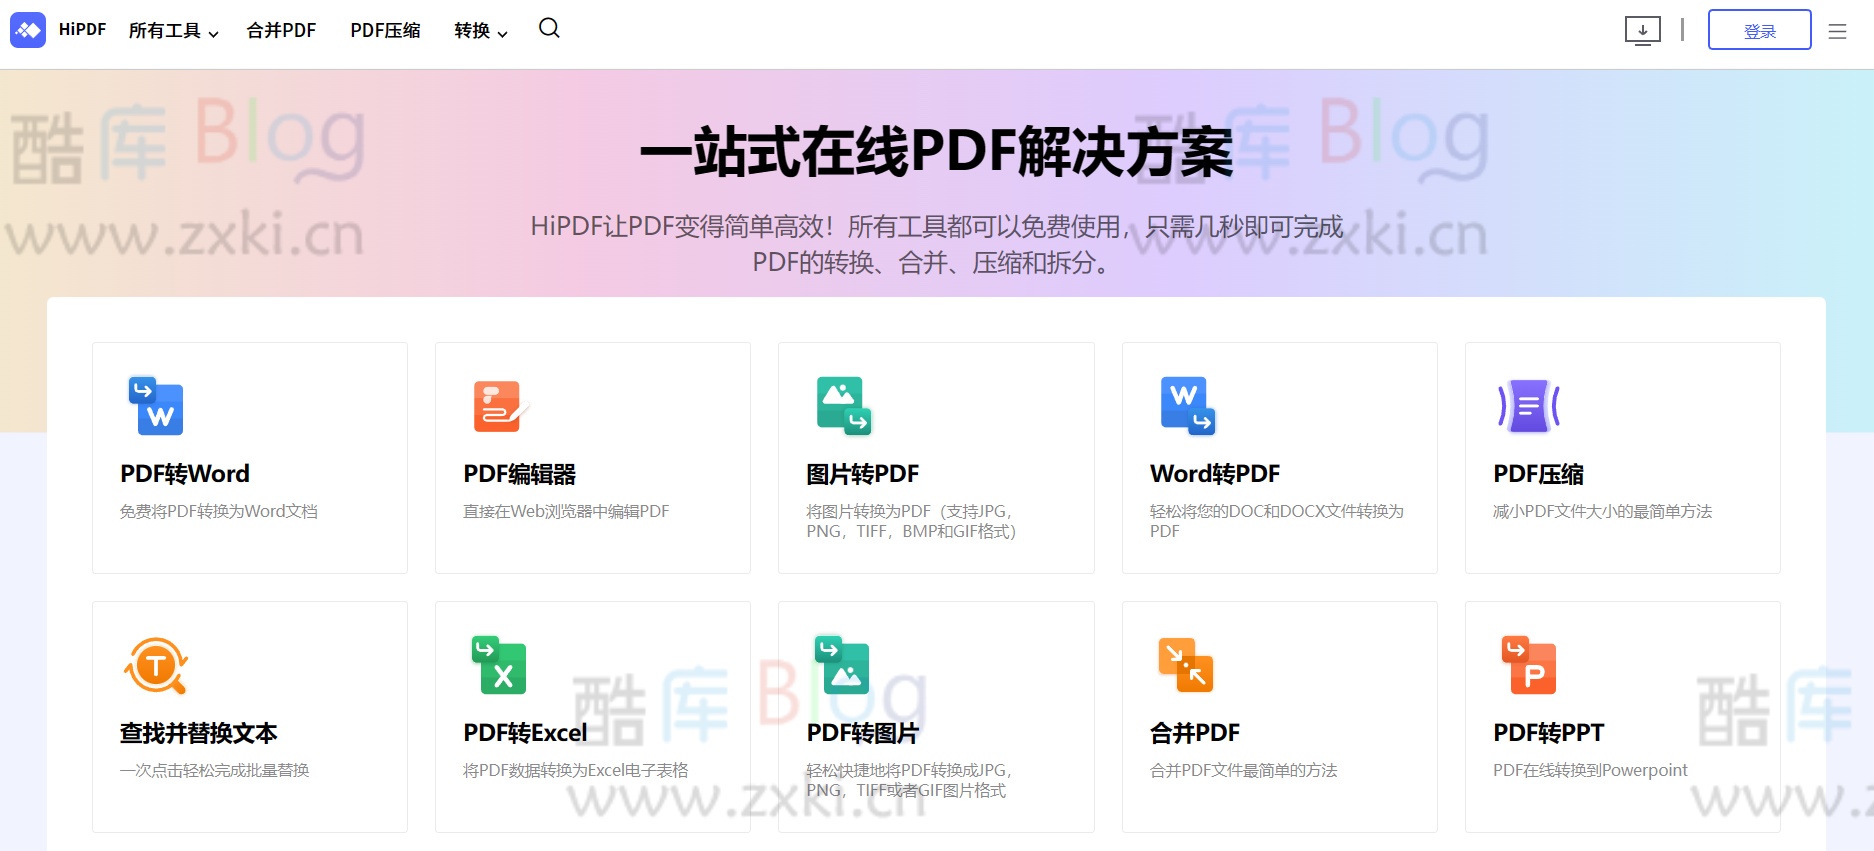 HiPDF，在线免费 PDF 转换器，支持 PDF 编辑工具